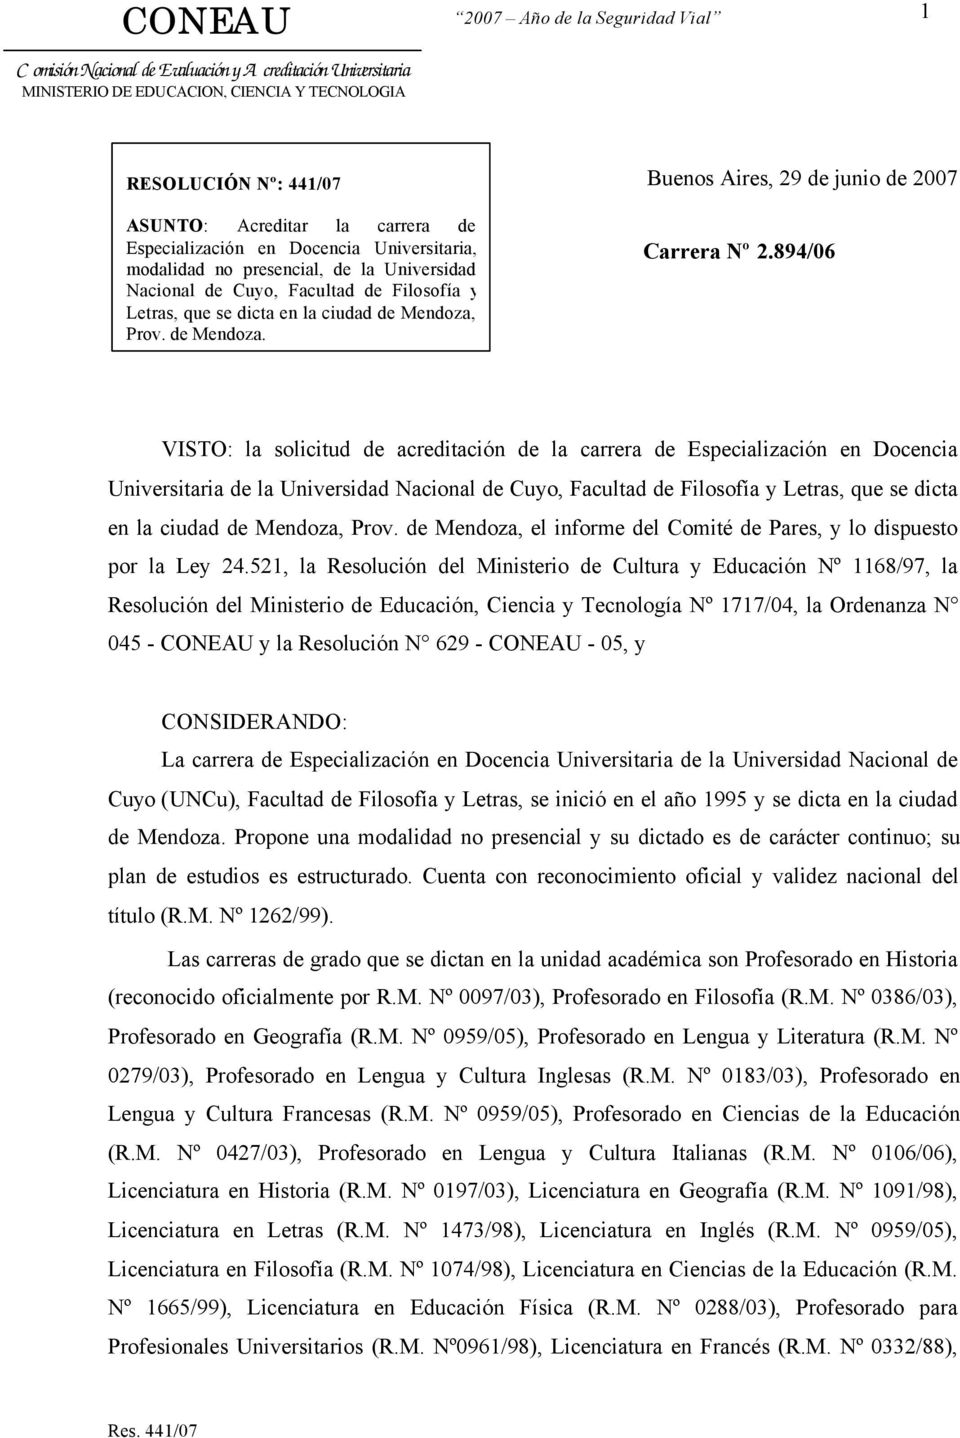 894/06 VISTO: la solicitud de acreditación de la carrera de Especialización en Docencia Universitaria de la Universidad Nacional de Cuyo, Facultad de Filosofía y Letras, que se dicta en la ciudad de